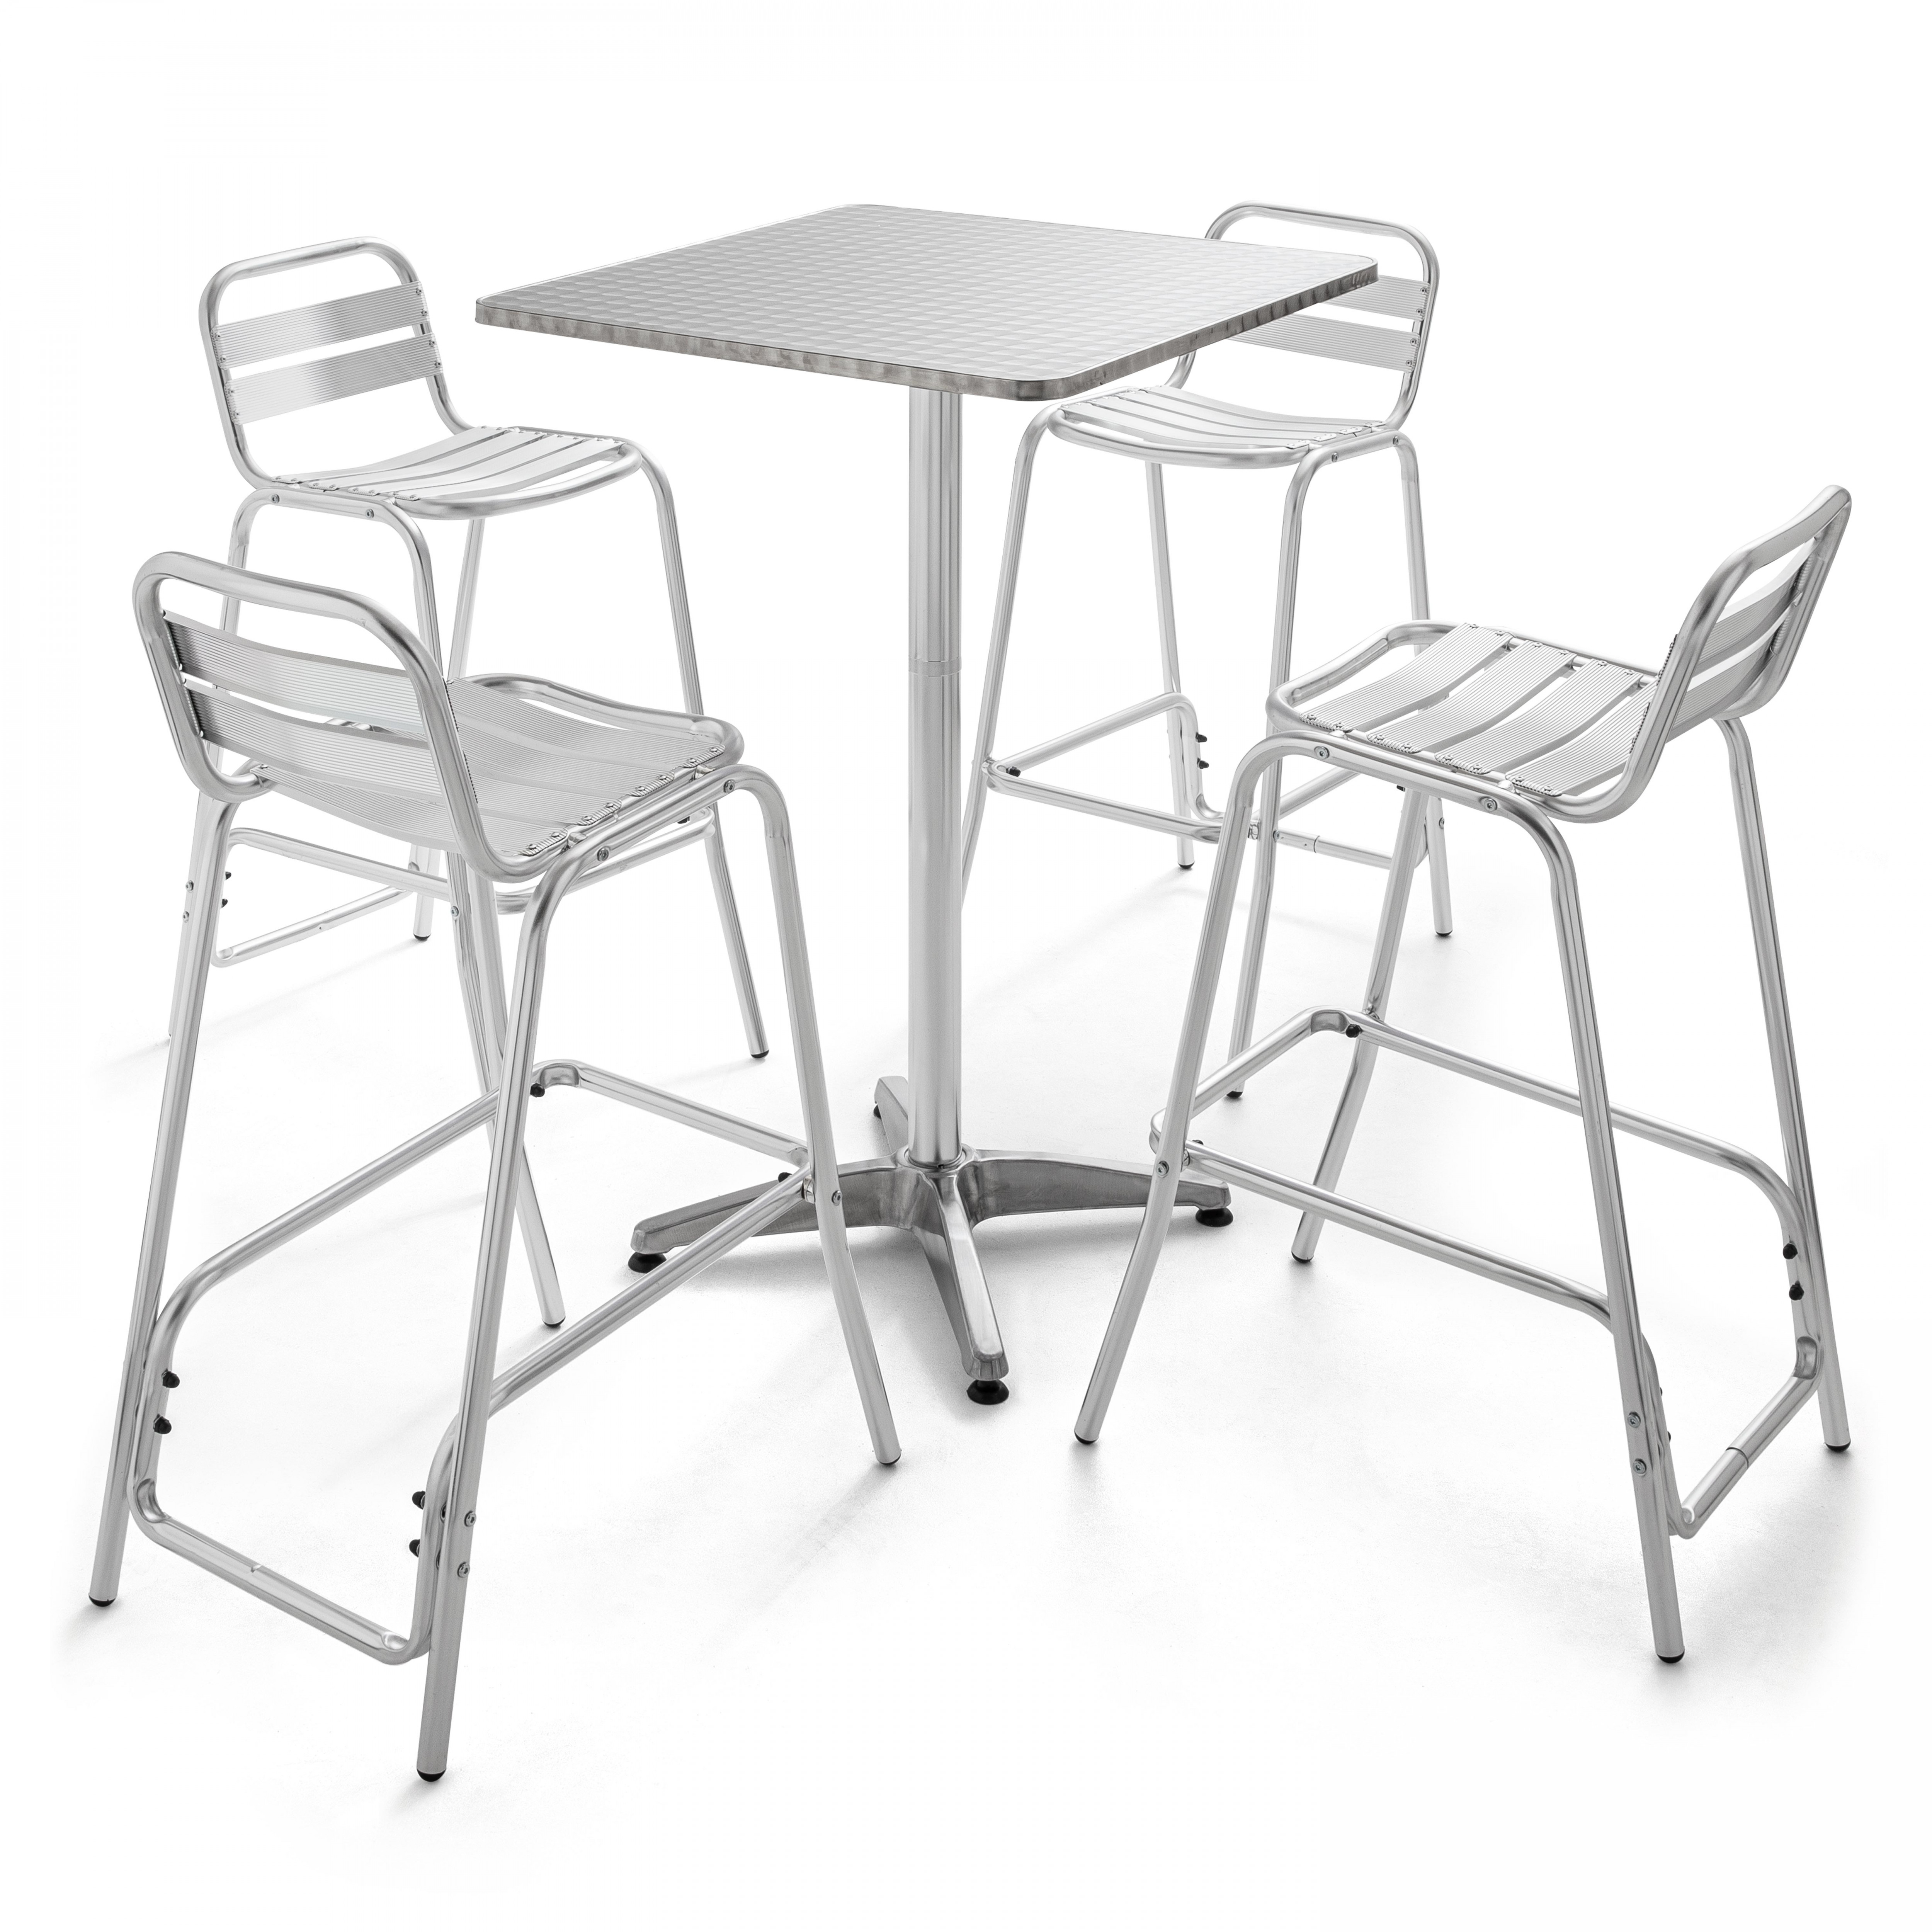 Table de jardin mange-debout et 4 chaises hautes en aluminium